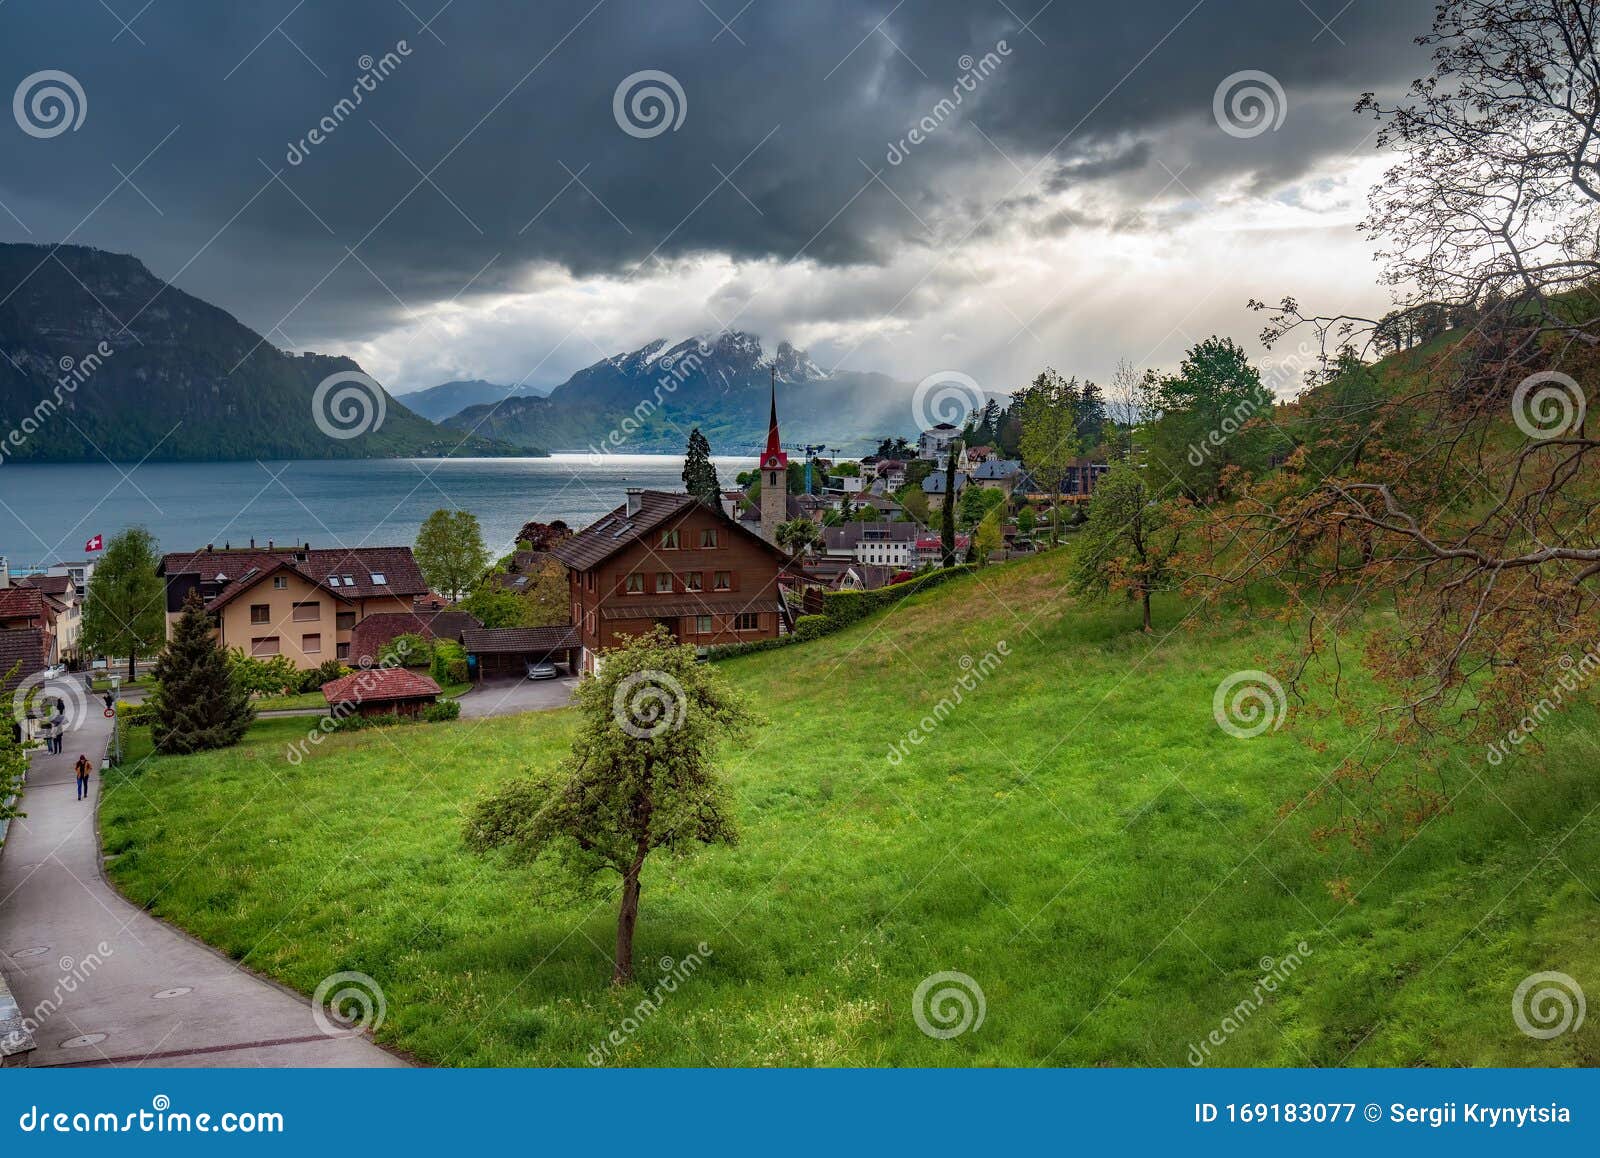 瑞士卢塞恩湖上的韦吉斯村 阴云密布图库摄影片 图片包括有古雅 断层块 村庄 目的地 和平